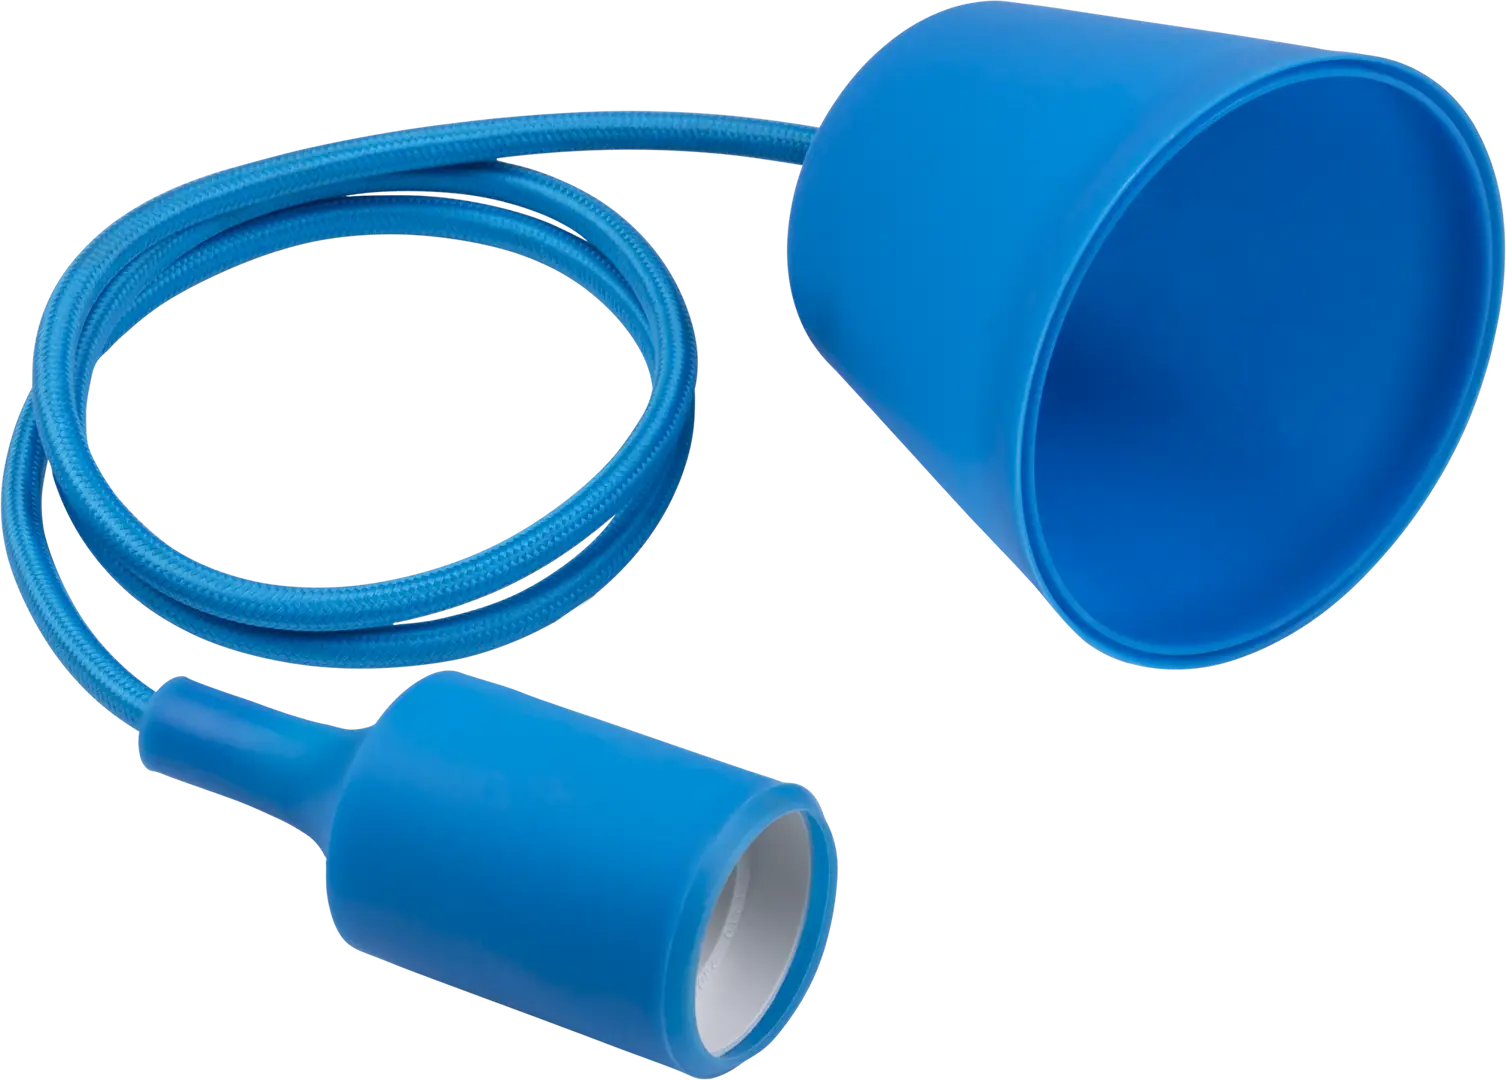 Патрон для лампы E27 TDM Electric с подвесом 1 м цвет синий пемза для педикюра с подвесом 9 × 4 см разно ная